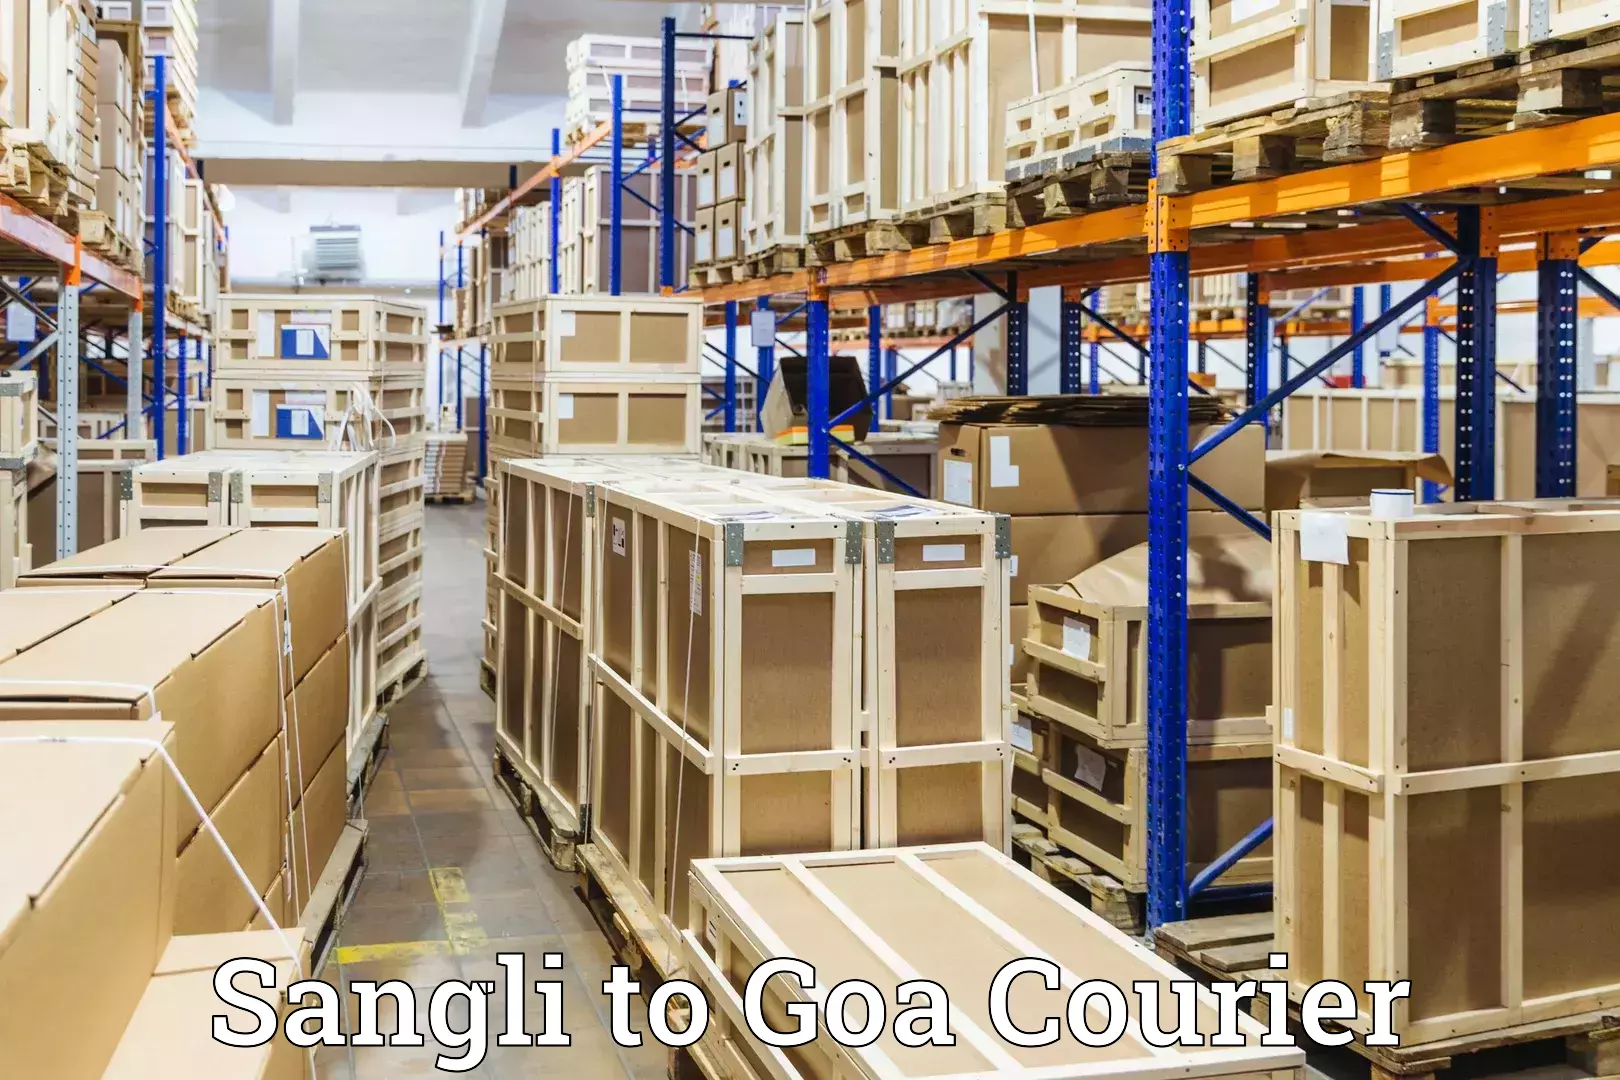 Door-to-door baggage service Sangli to South Goa